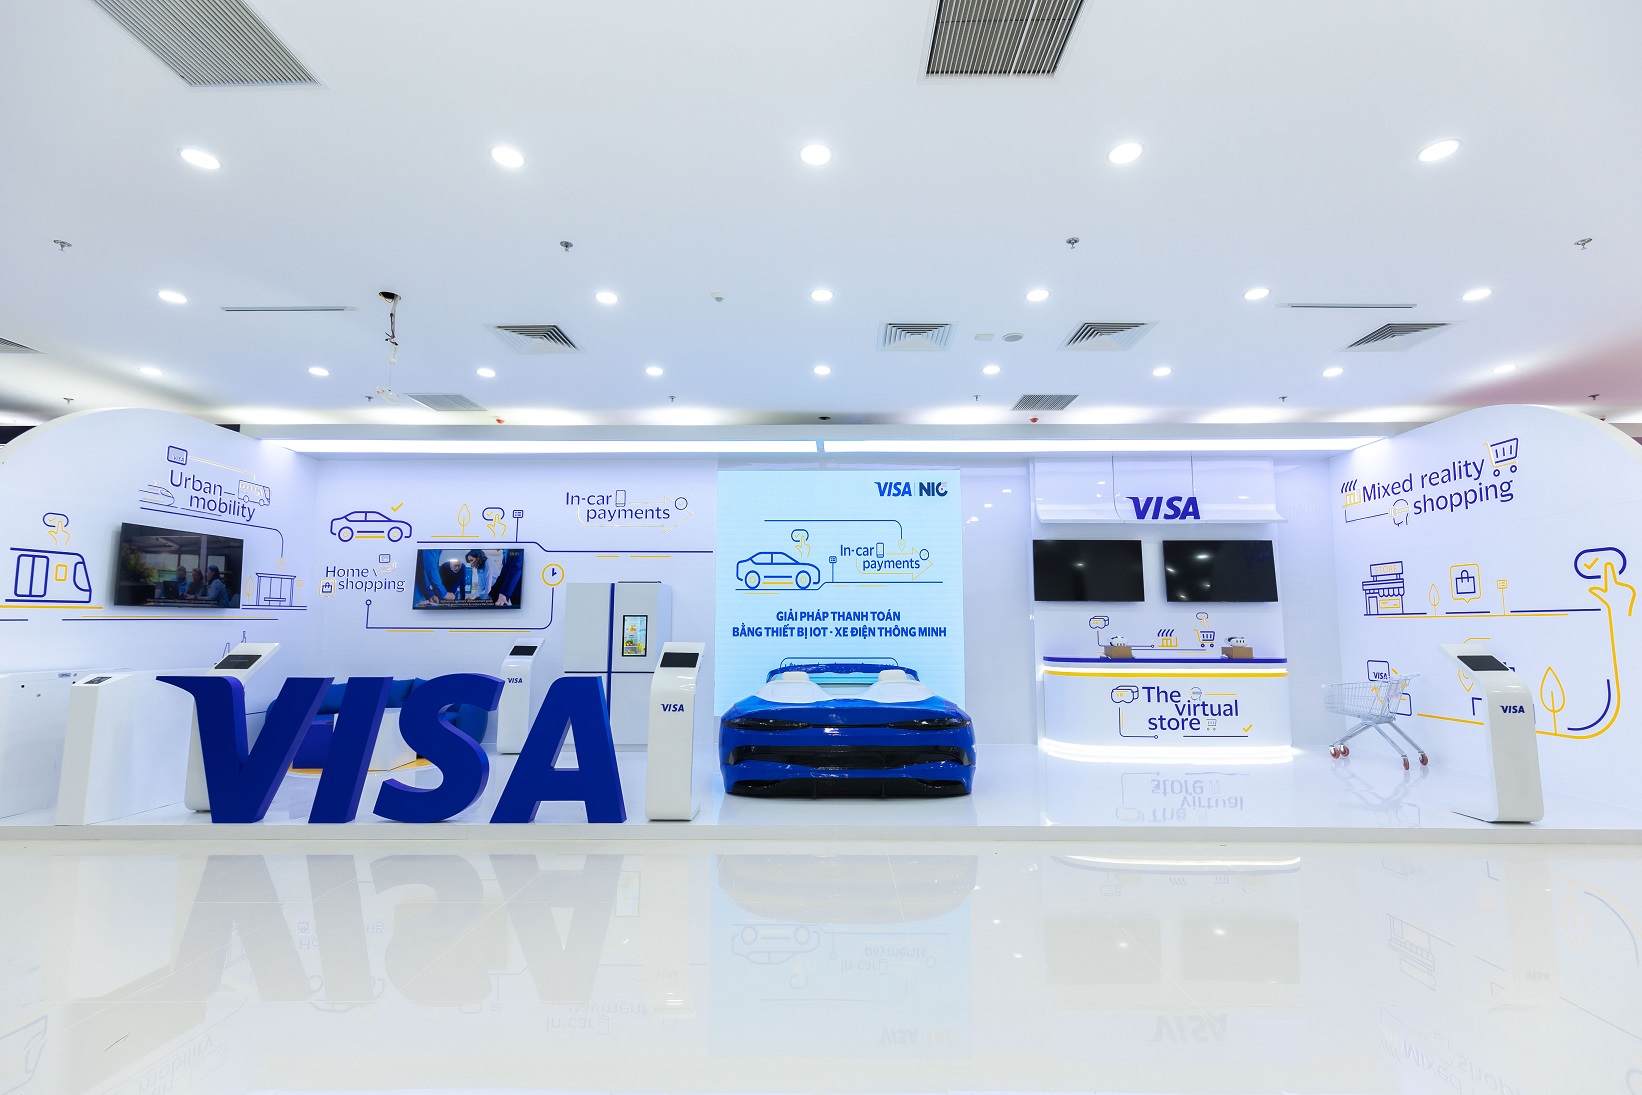 Không gian trải nghiệm mua sắm lai thực-ảo của Visa tại NIC Hòa Lạc - Hình 2